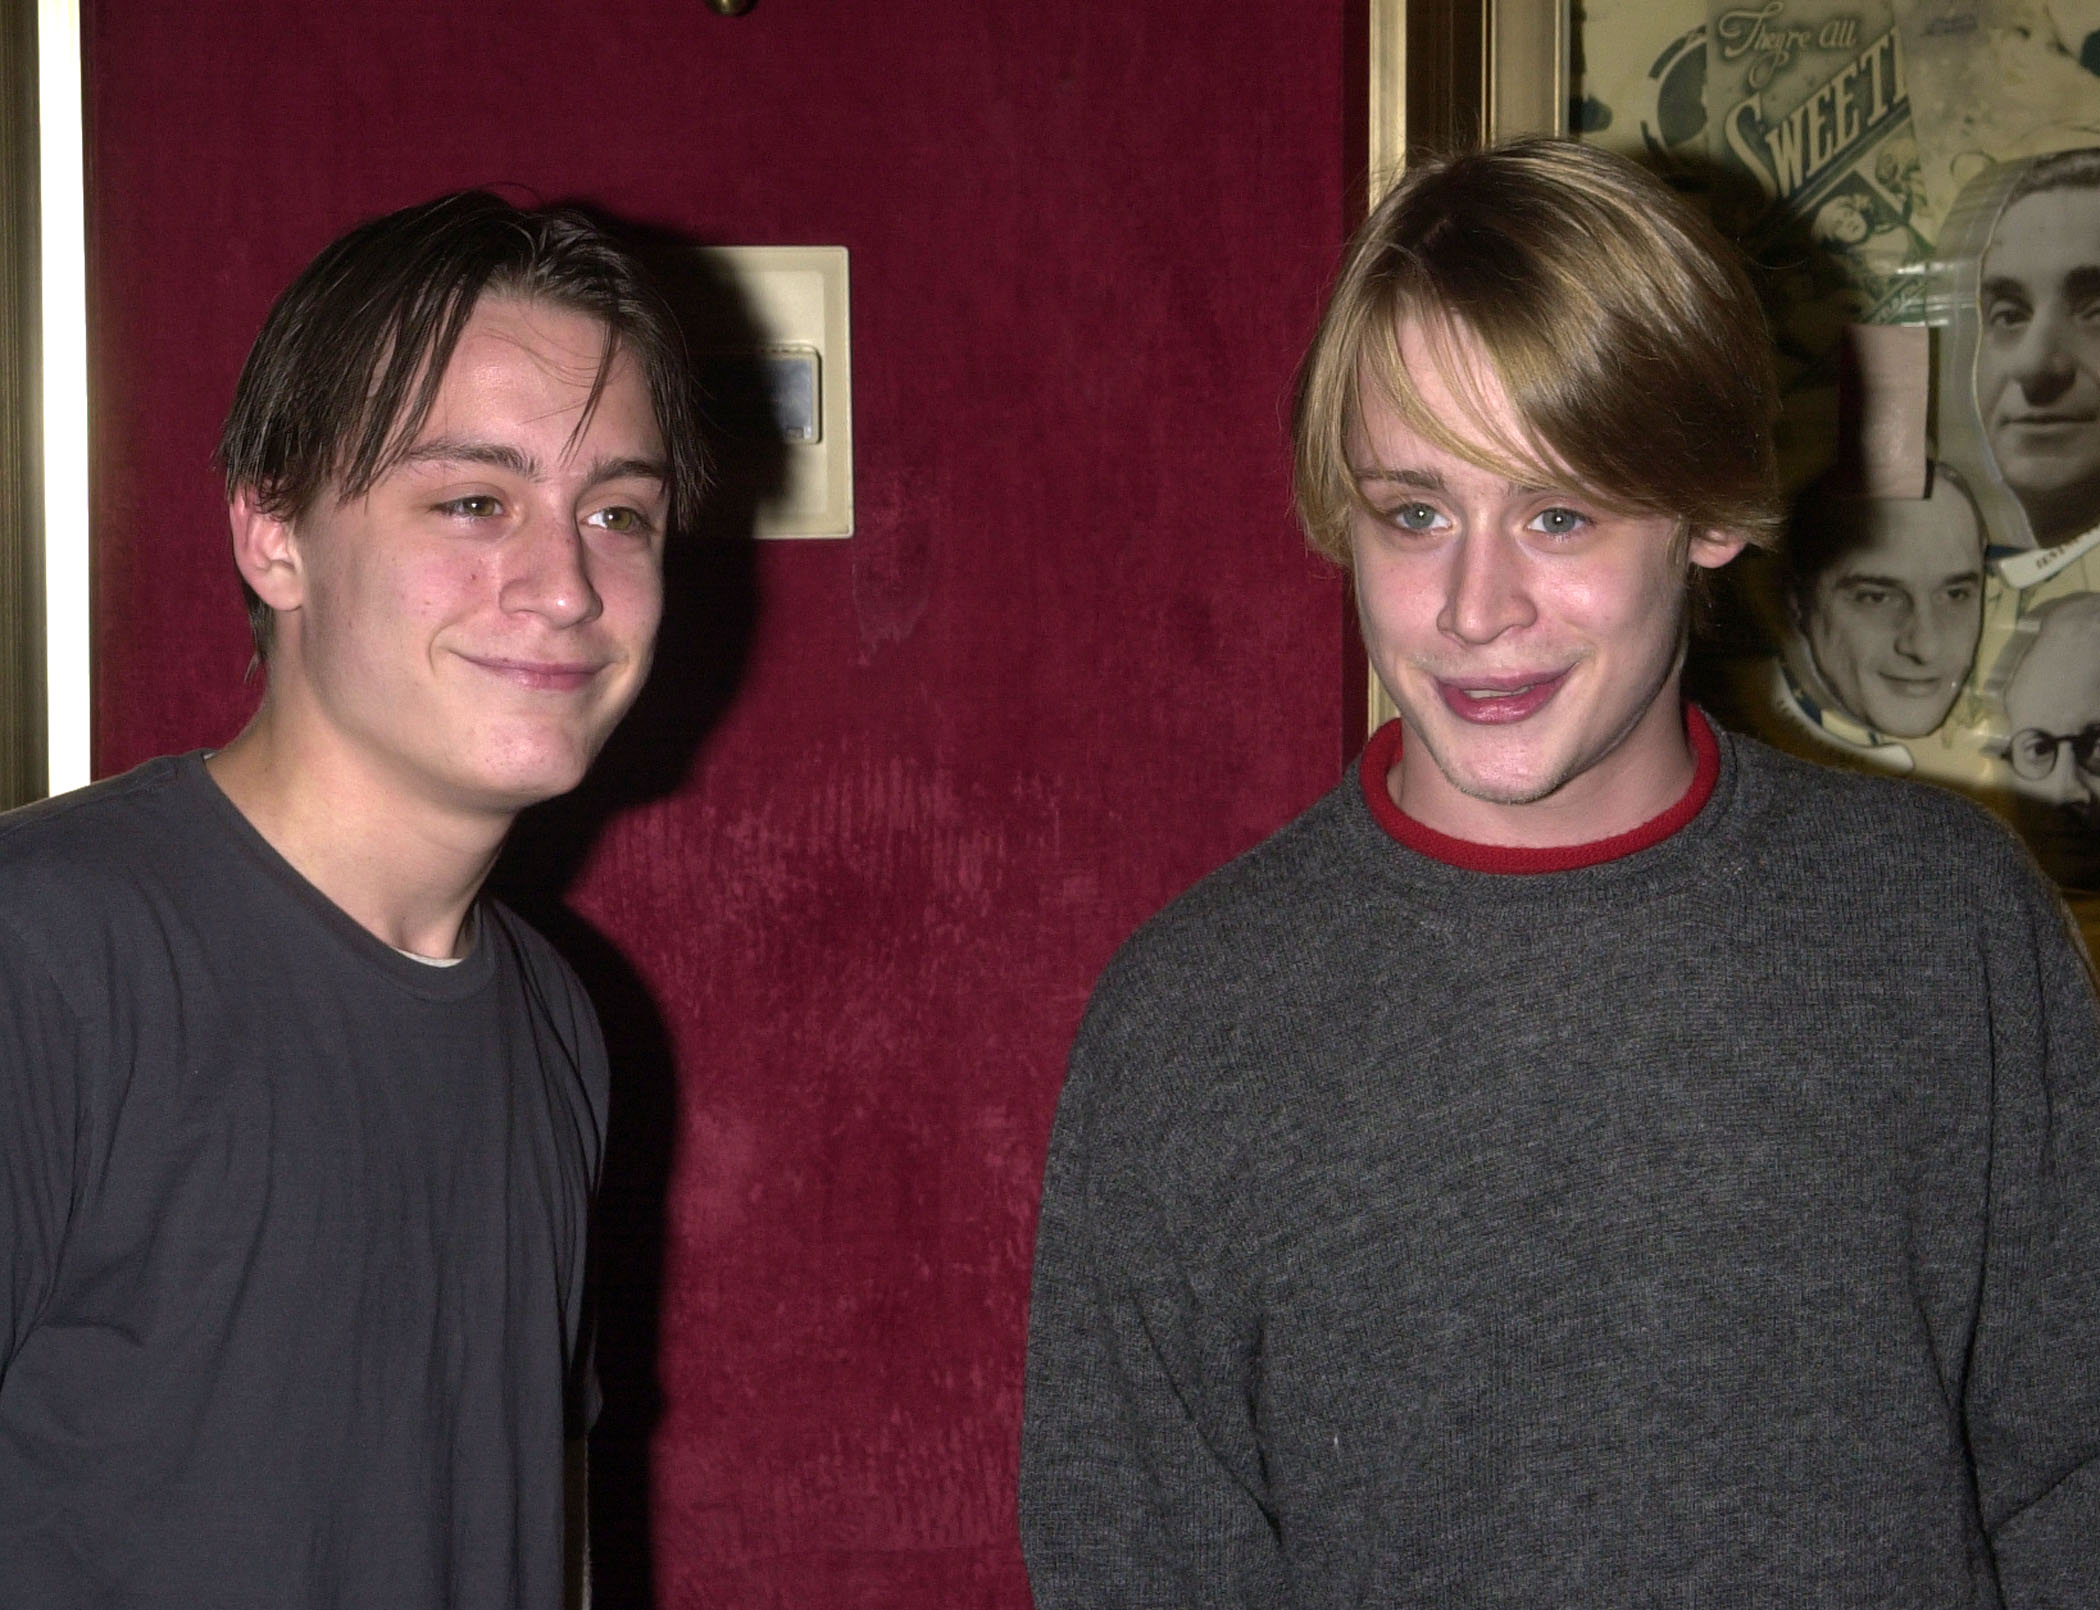 Kieran et Macaulay Culkin assistent à la première d'"Un amour à New York" à New York le 3 octobre 2001 | Source : Getty Images